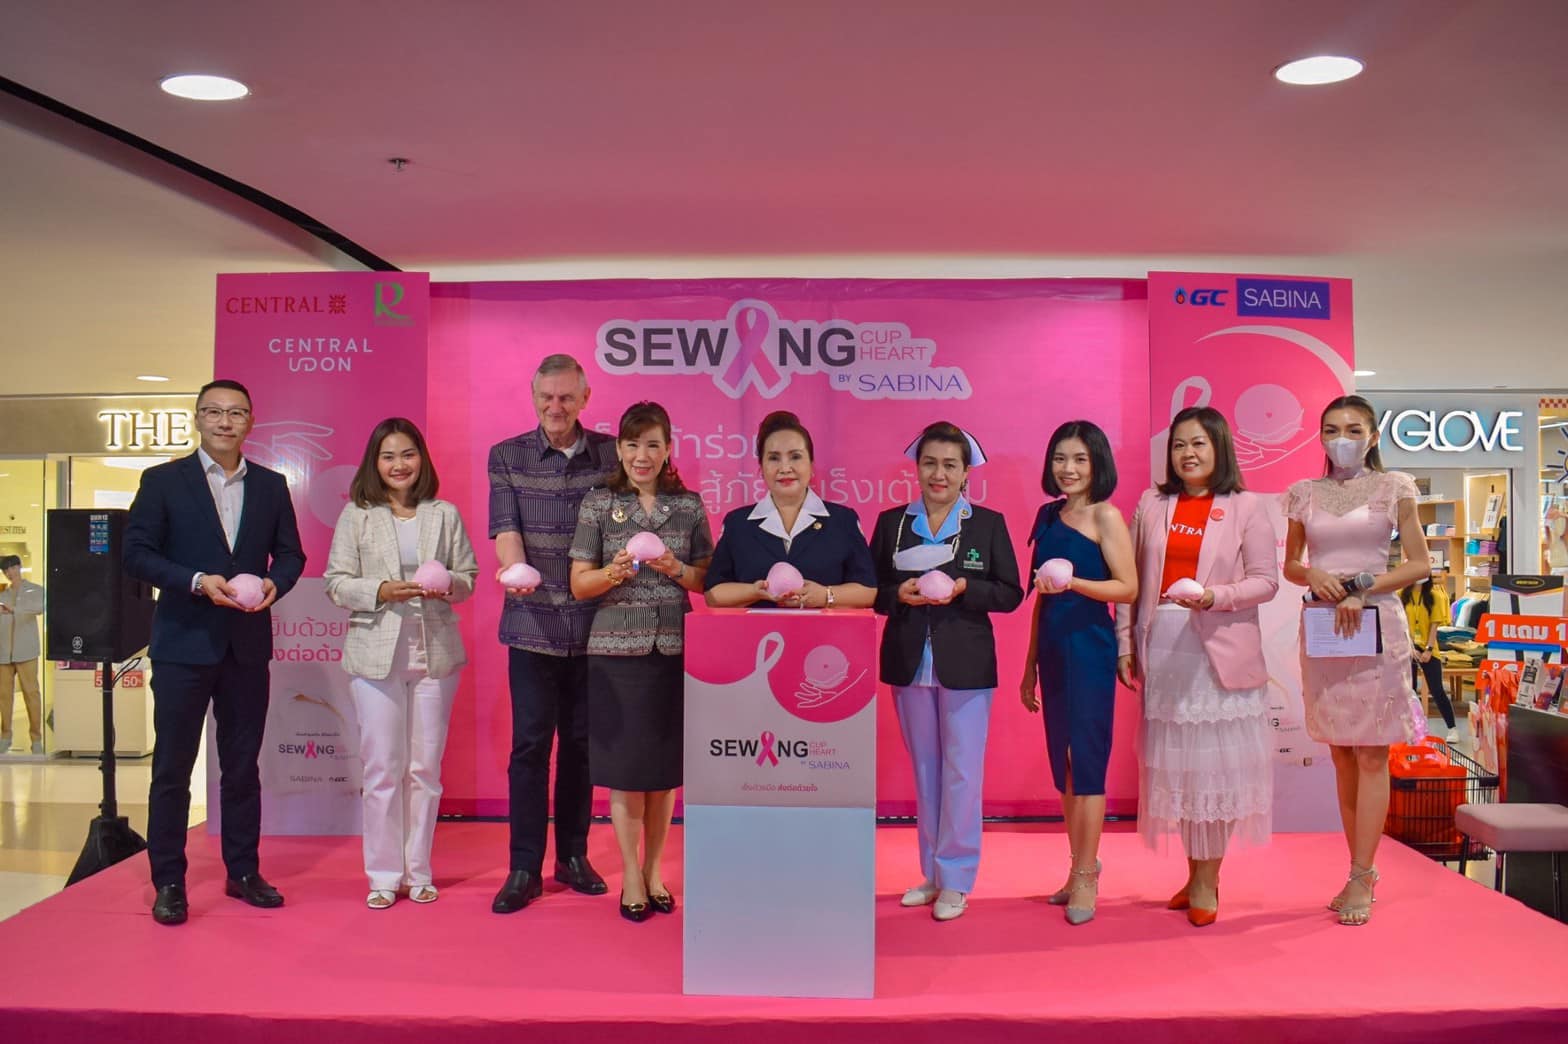 บริษัท ซาบีน่า มหาชน (จำกัด) ร่วมกับ ห้างเซ็นทรัล อุดรธานี  จัดกิจกรรมในโครงการ “Sabina Sewing Cup Sewing Heart  เย็บเต้ารวมใจ สู้ภัยมะเร็งเต้านม